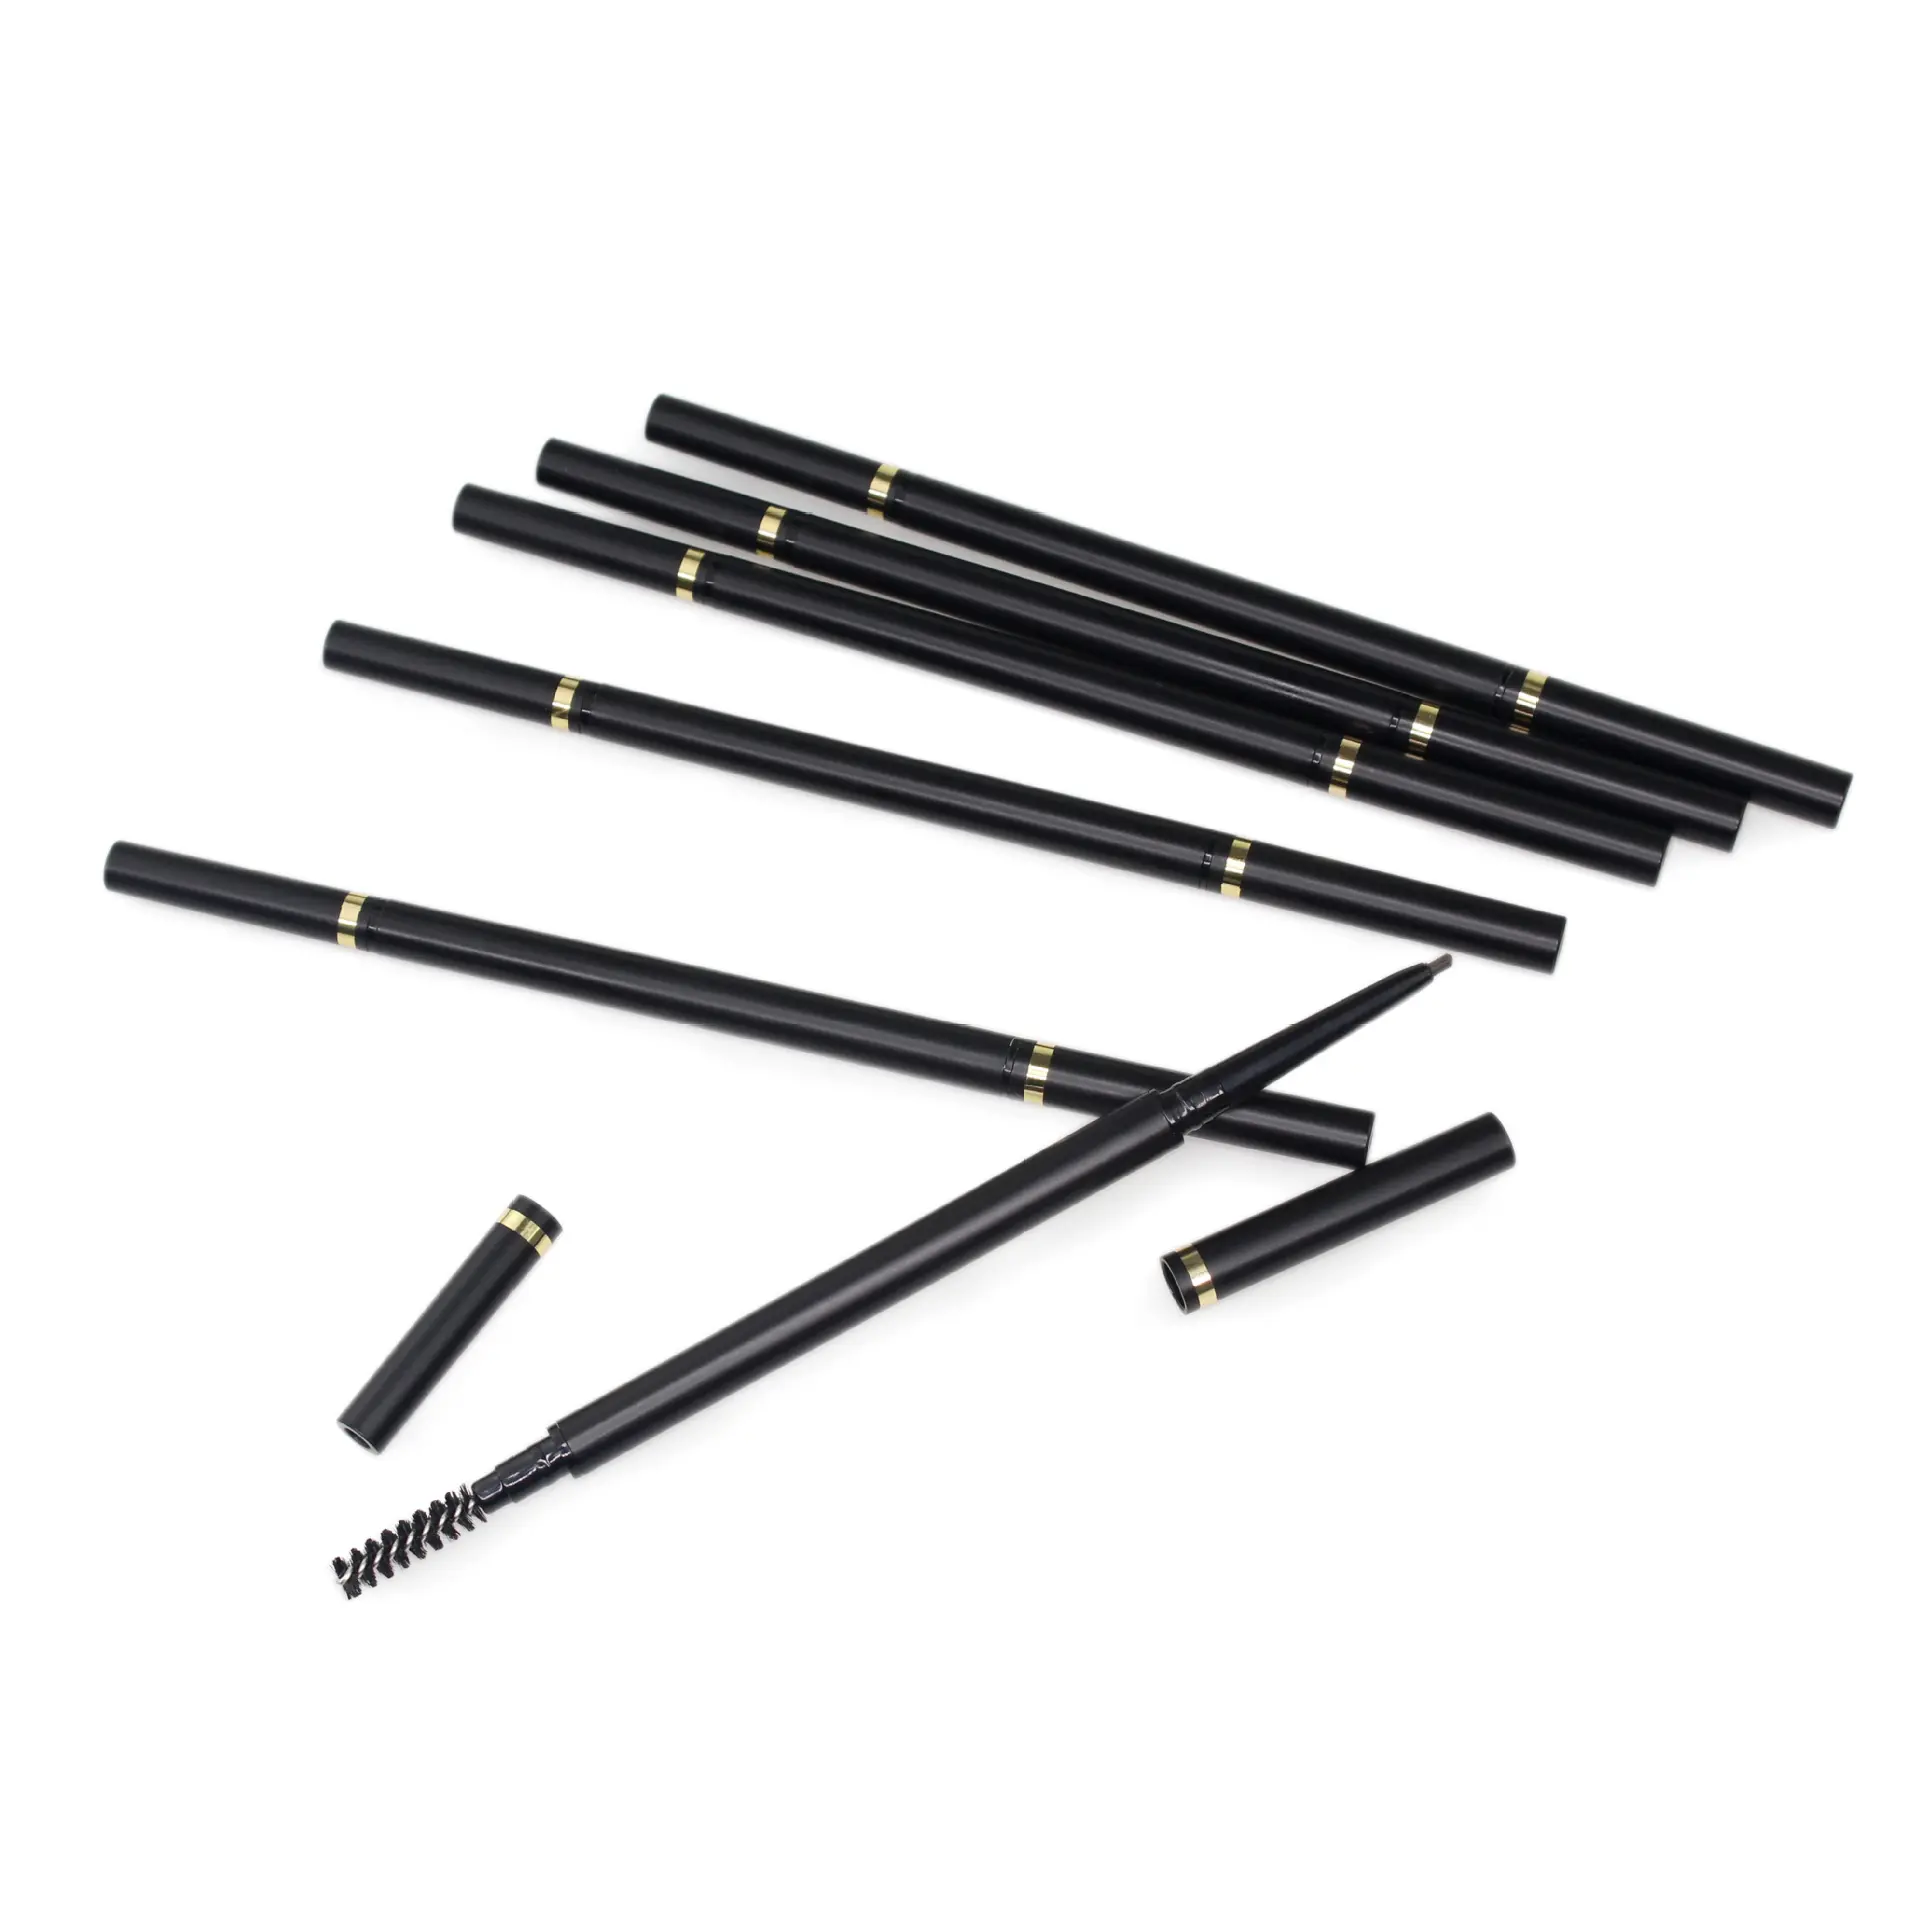 قلم حواجب للاستخدام الشخصي يستخدم لإبراز الحواجب به علامة تجارية خاصة مع إمكانية حملهما مزدوج الأغراض مع ترطيبات للحواجب غير مغطاه للسيدات